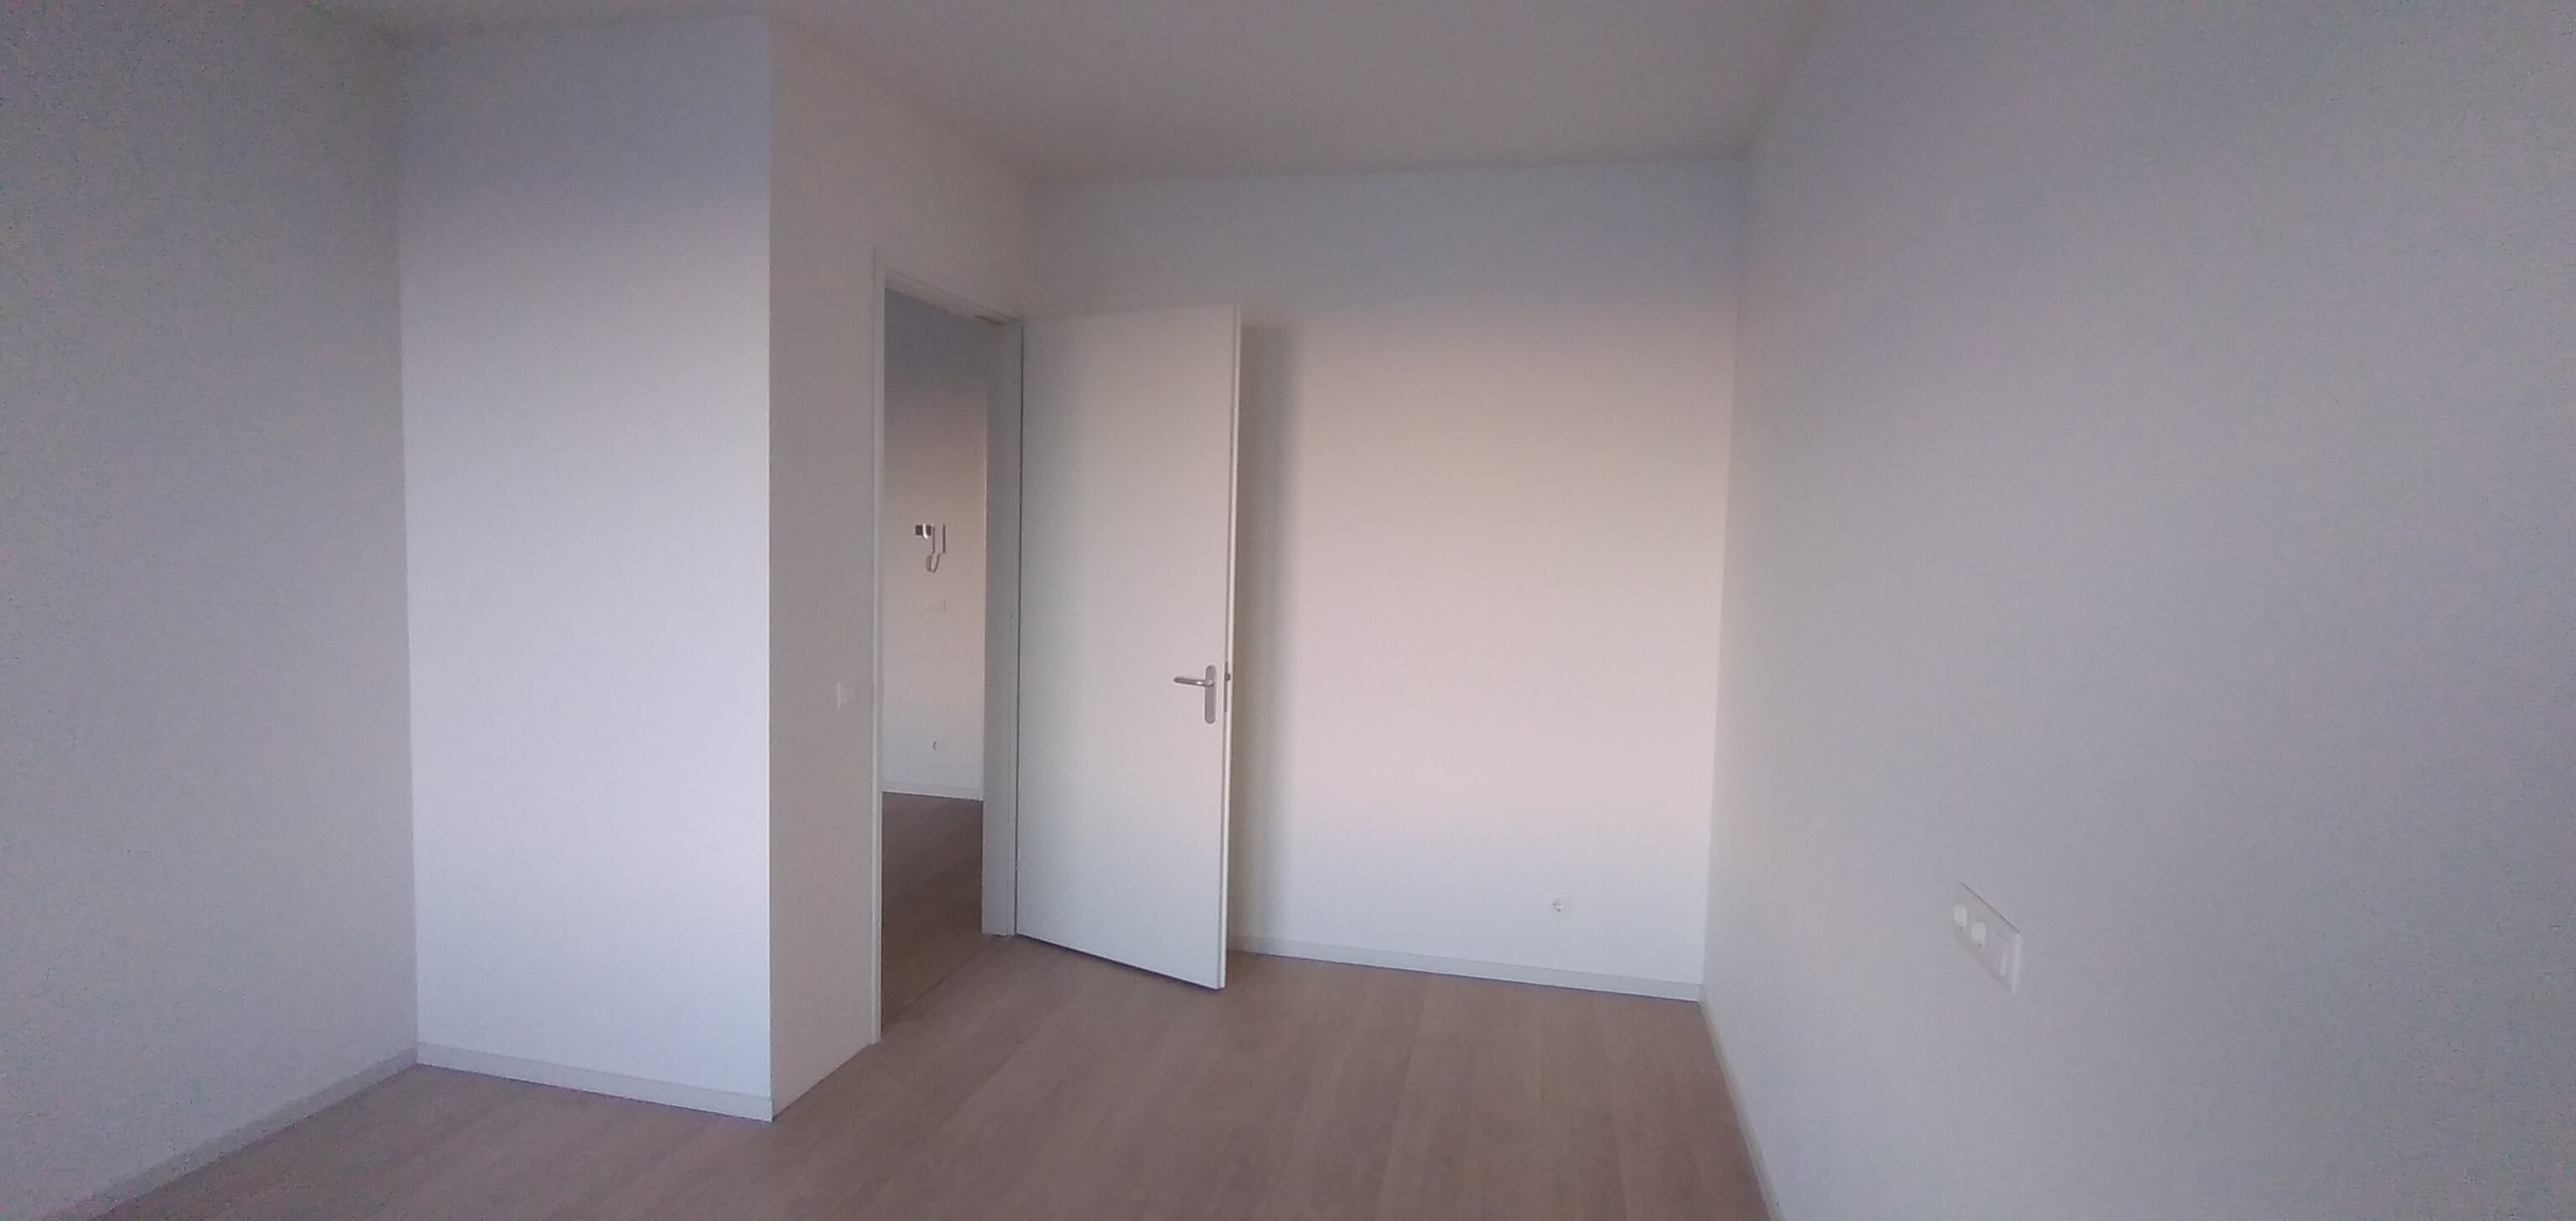 Bekijk for 1/6 van apartment in Lelystad